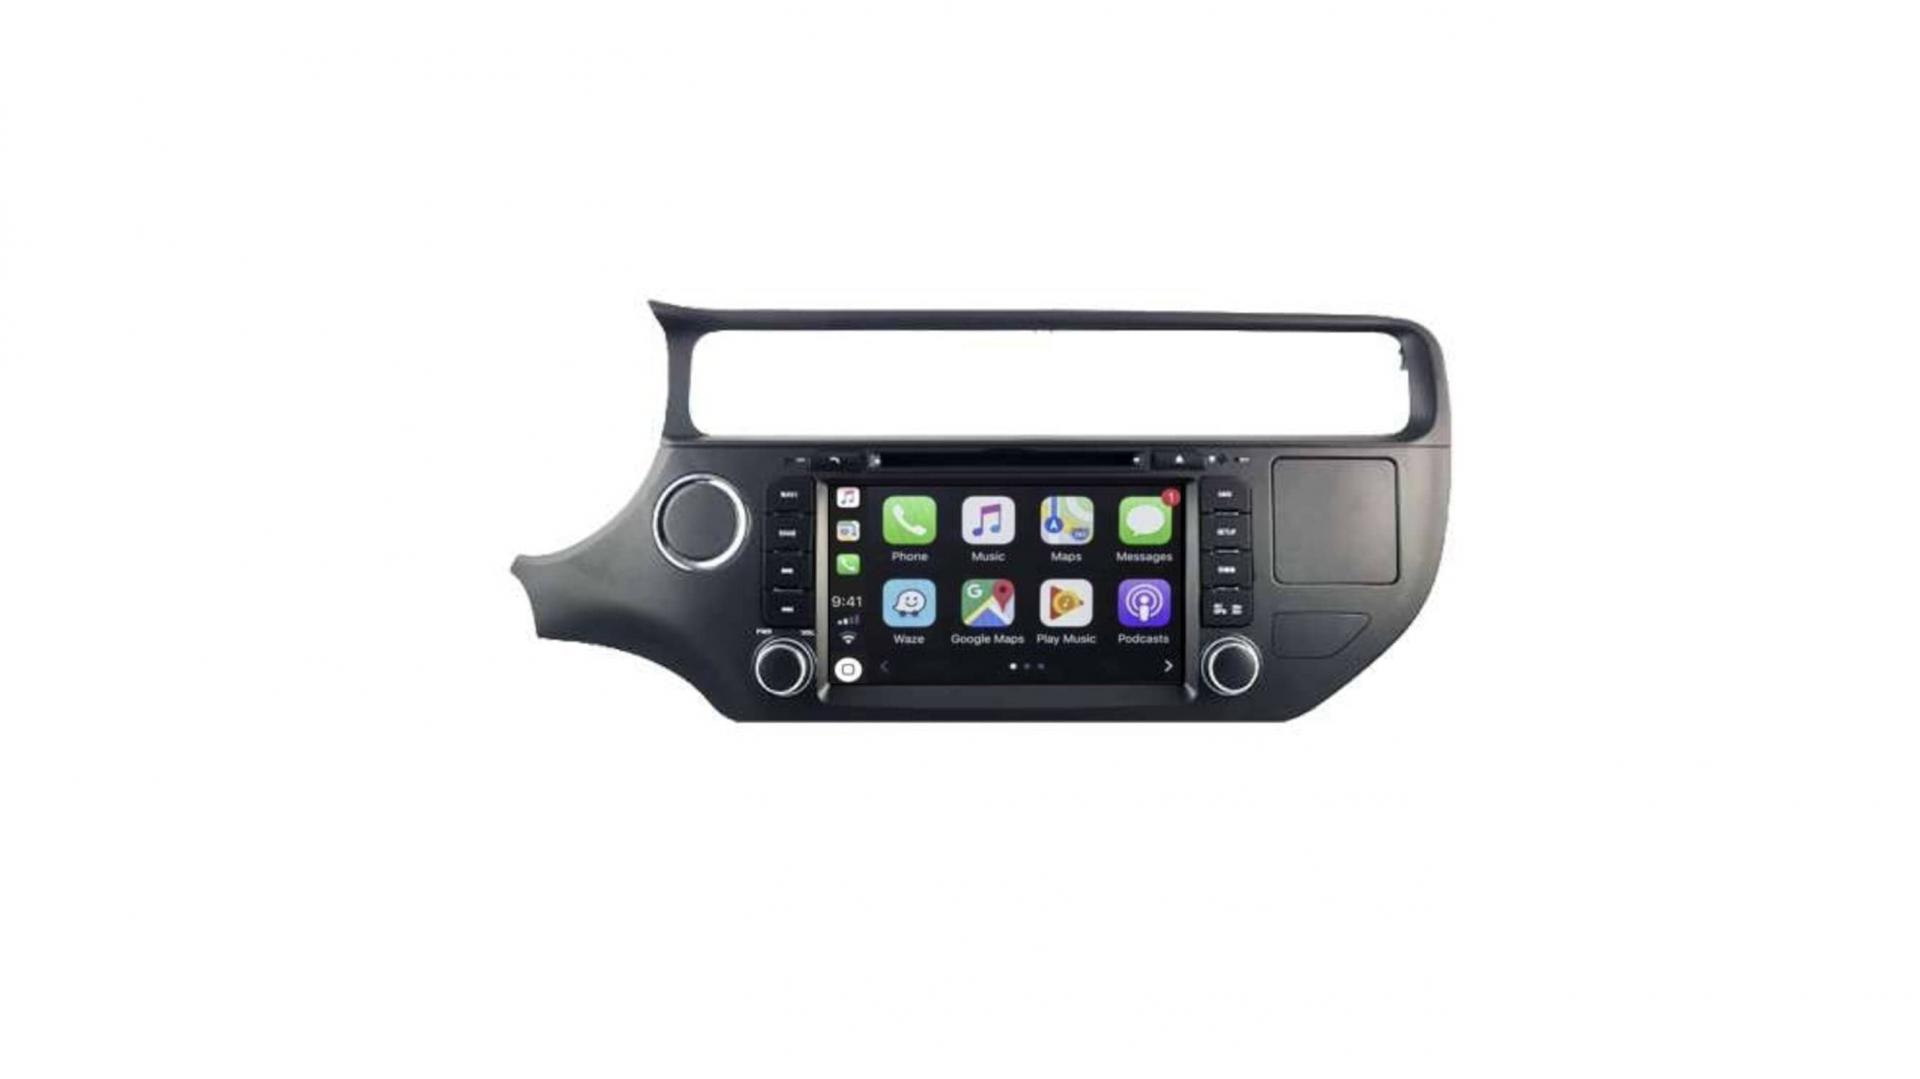 Autoradio androi d auto carplay gps bluetooth kia rio depuis 2015 1